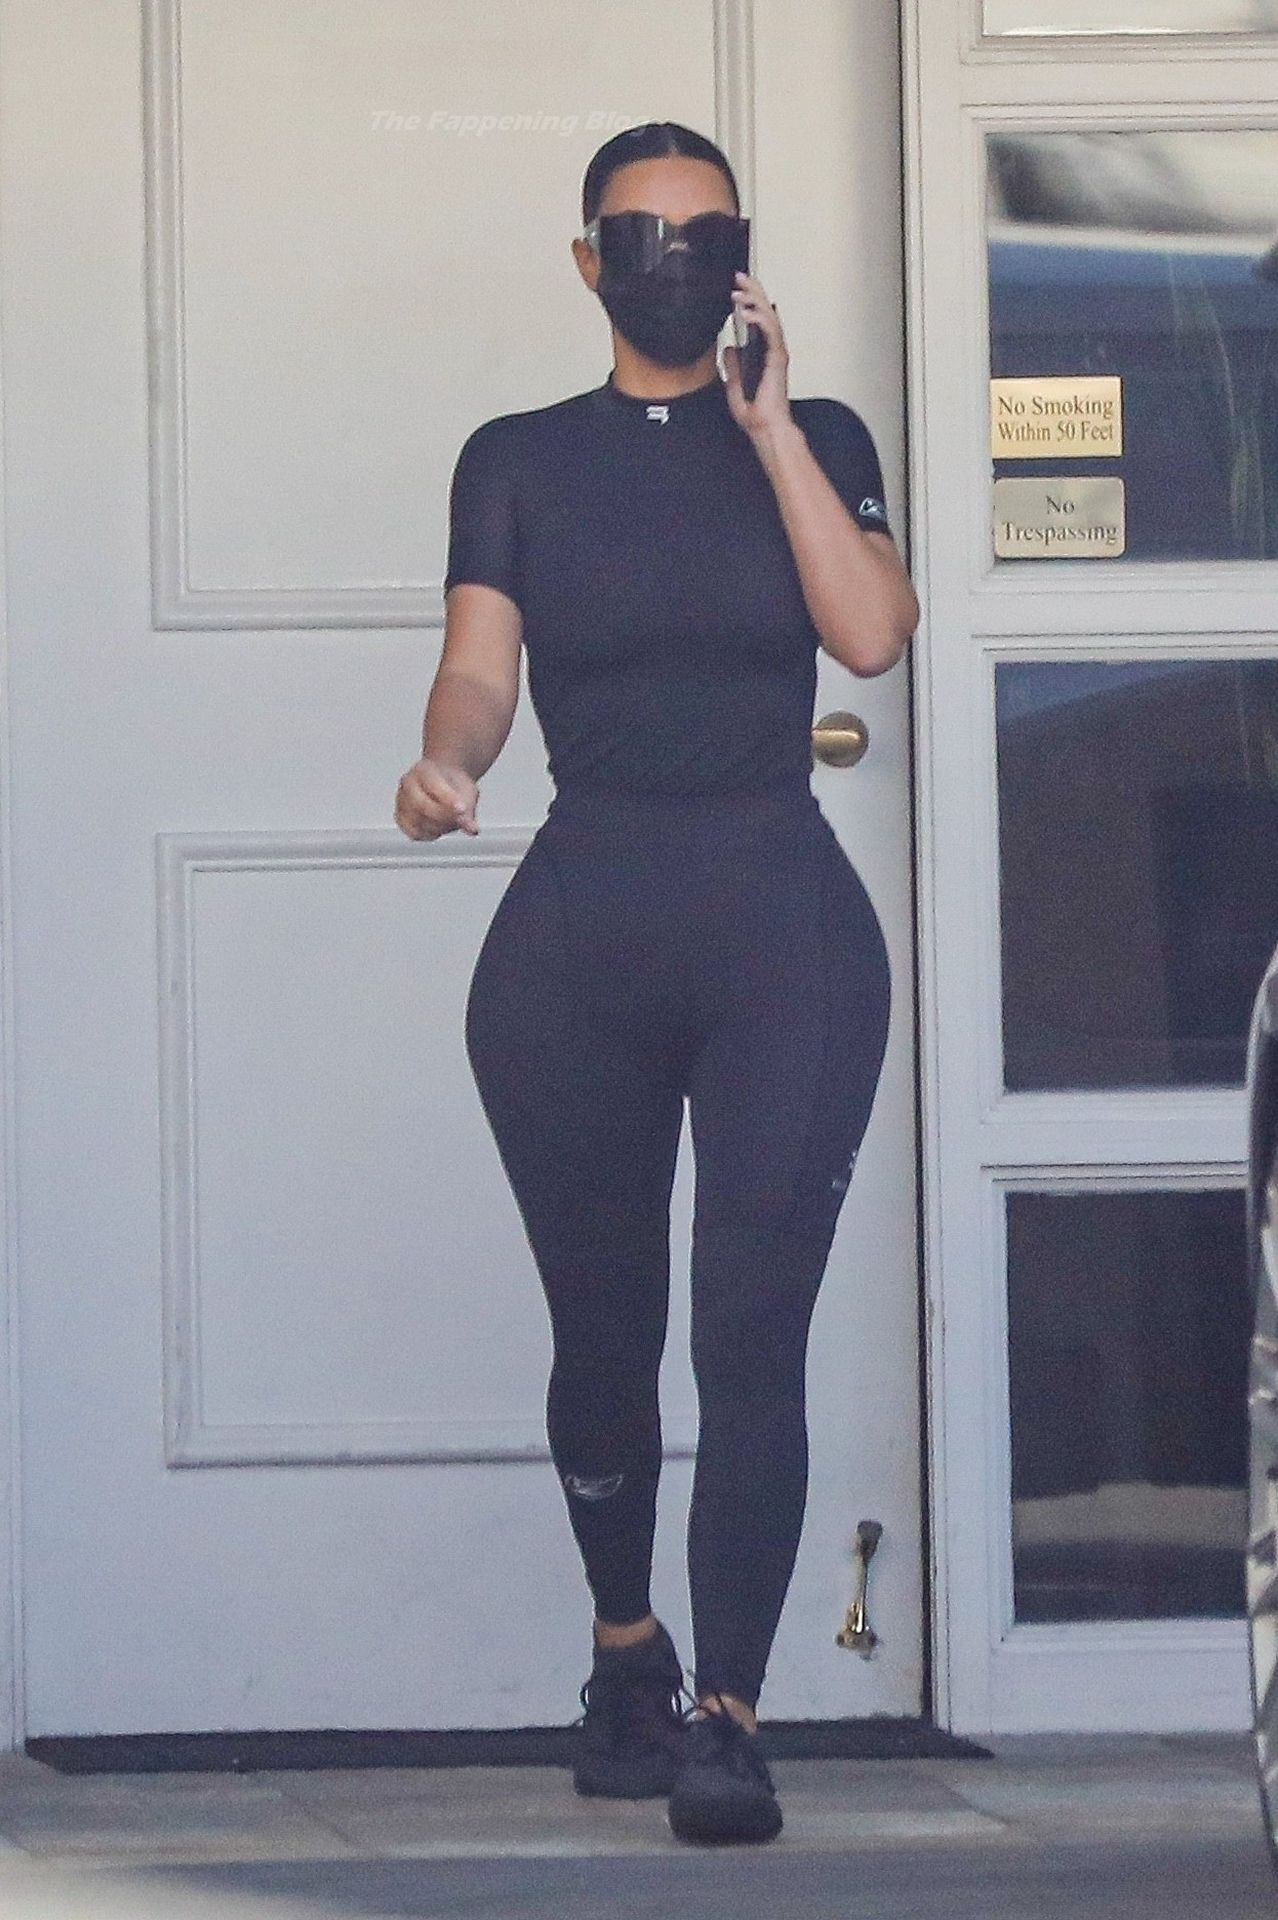 Kim-Kardashian-Sexy-The-Fappening-Blog-8.jpg